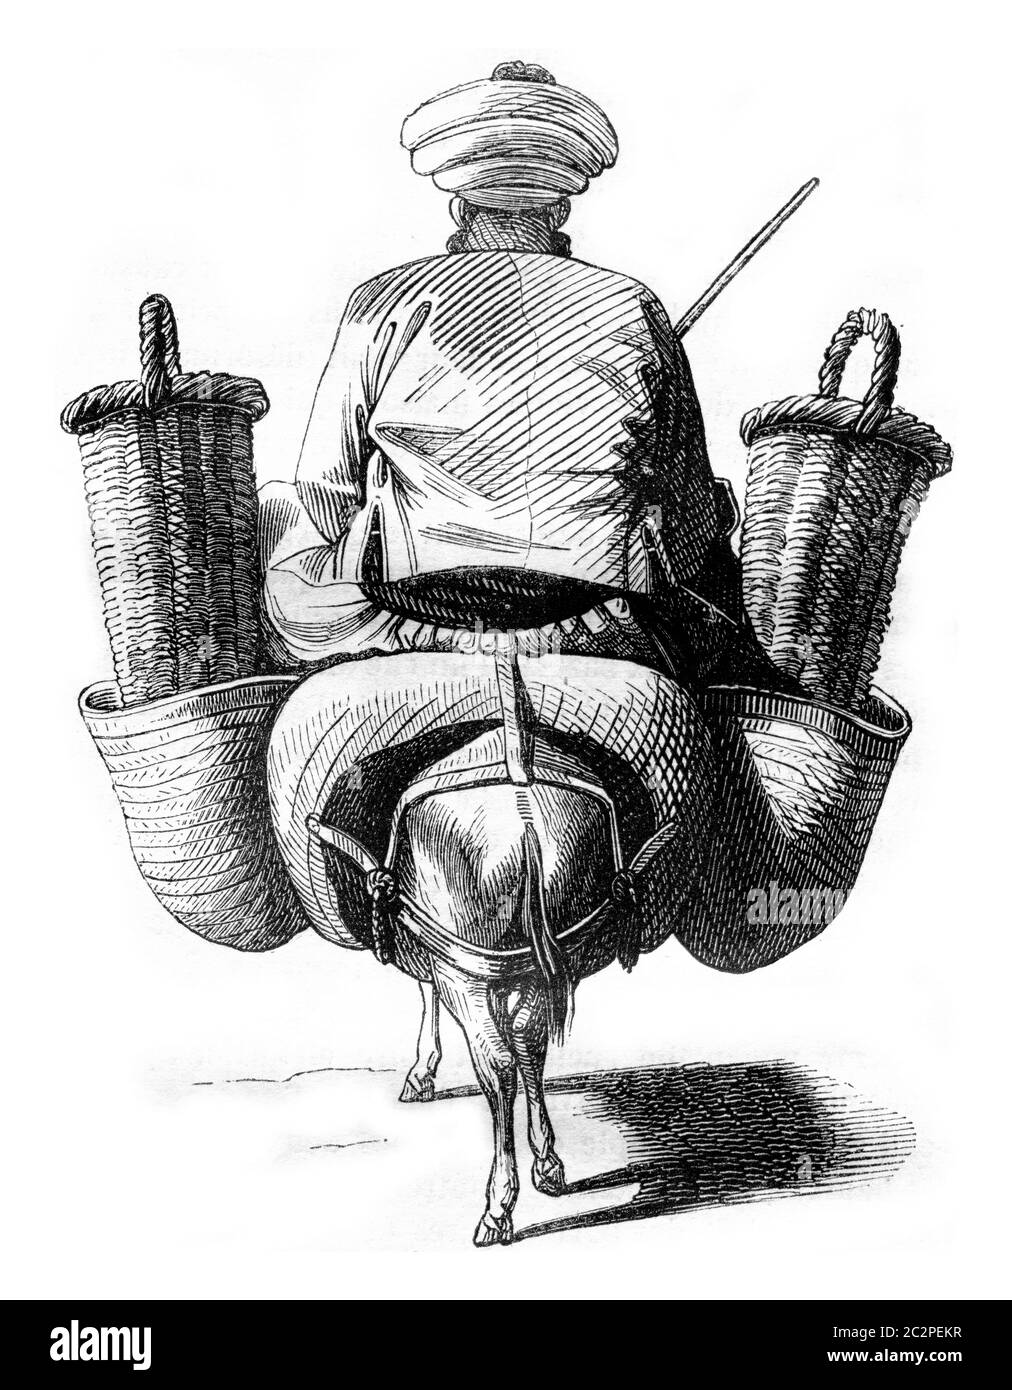 Fichi mercantili moreschi, illustrazione d'annata incisa. Magasin Pittoresque 1843. Foto Stock